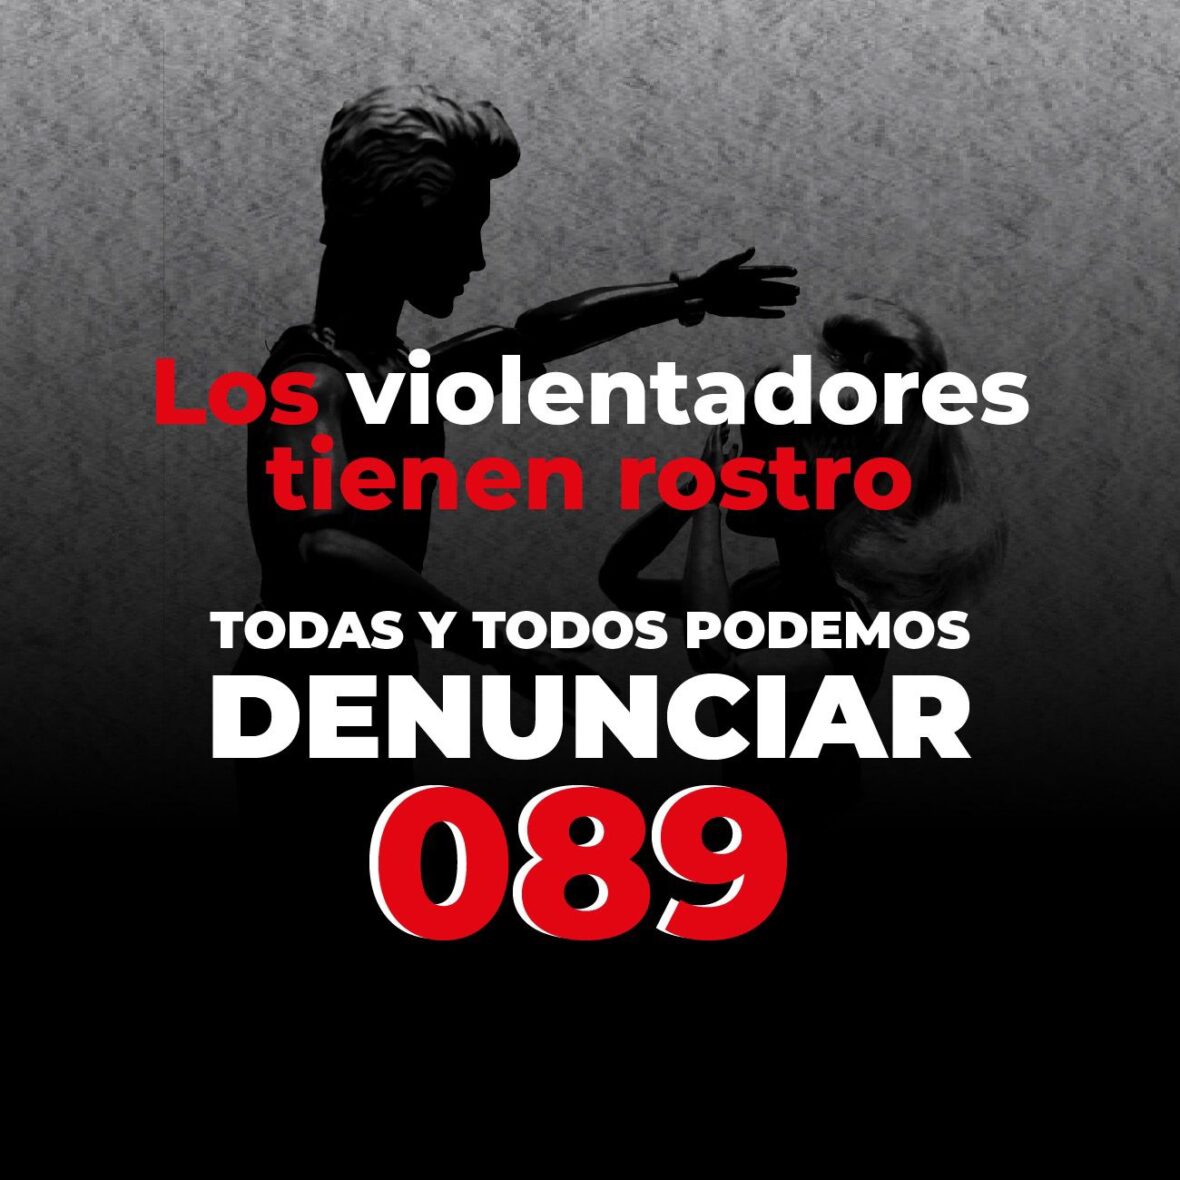 WhatsApp Image 2023 08 02 at 3.10.50 PM scaled "Los violentadores tienen rostro"